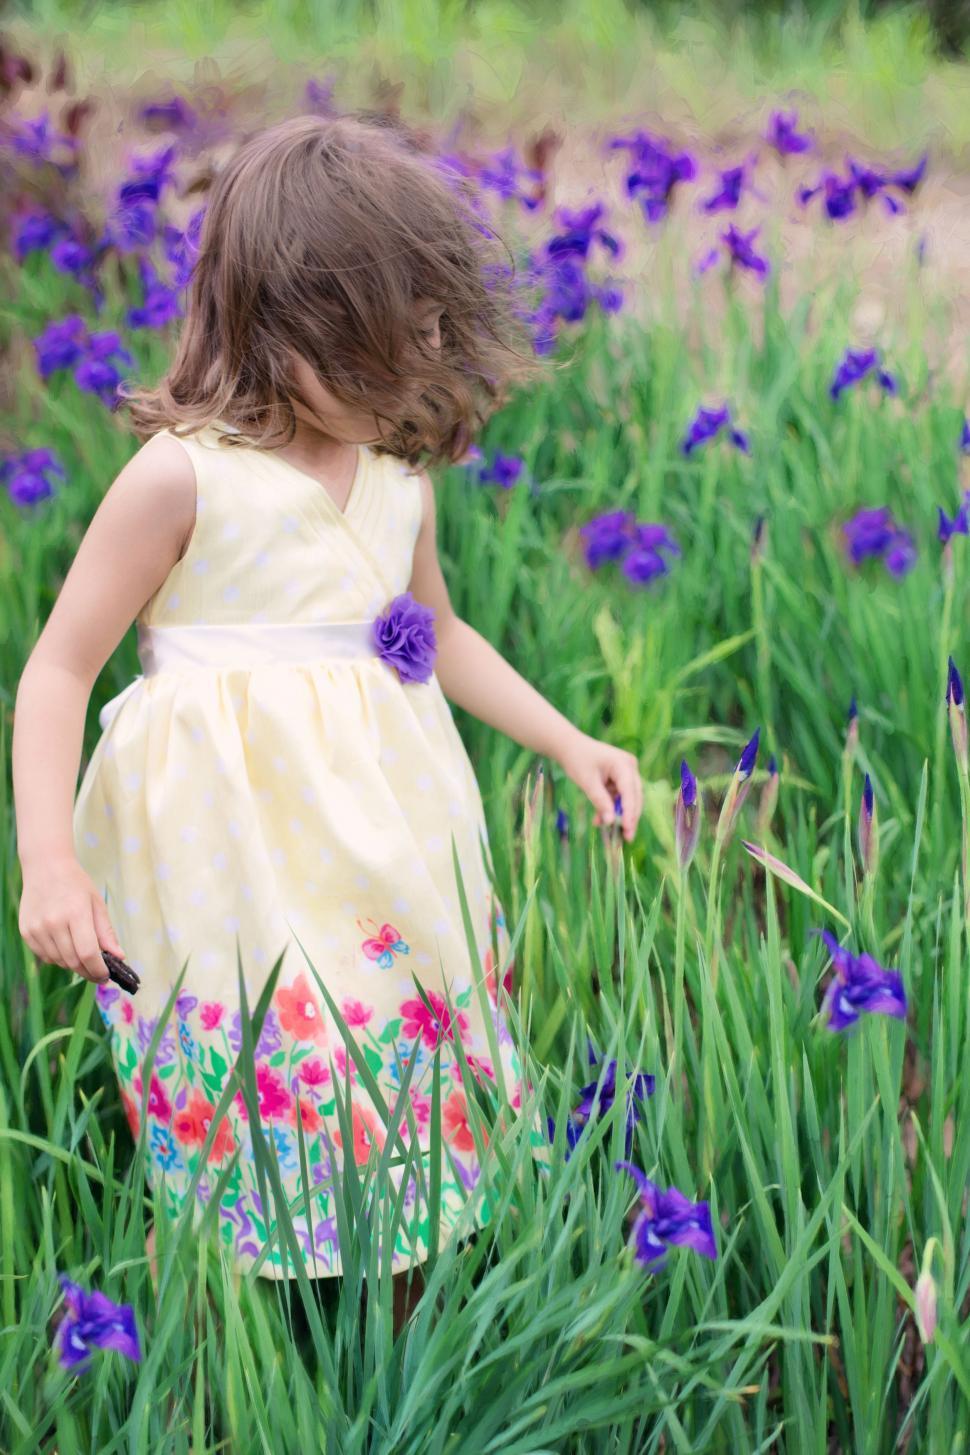 Free Image of Little Girl in Flower Field  